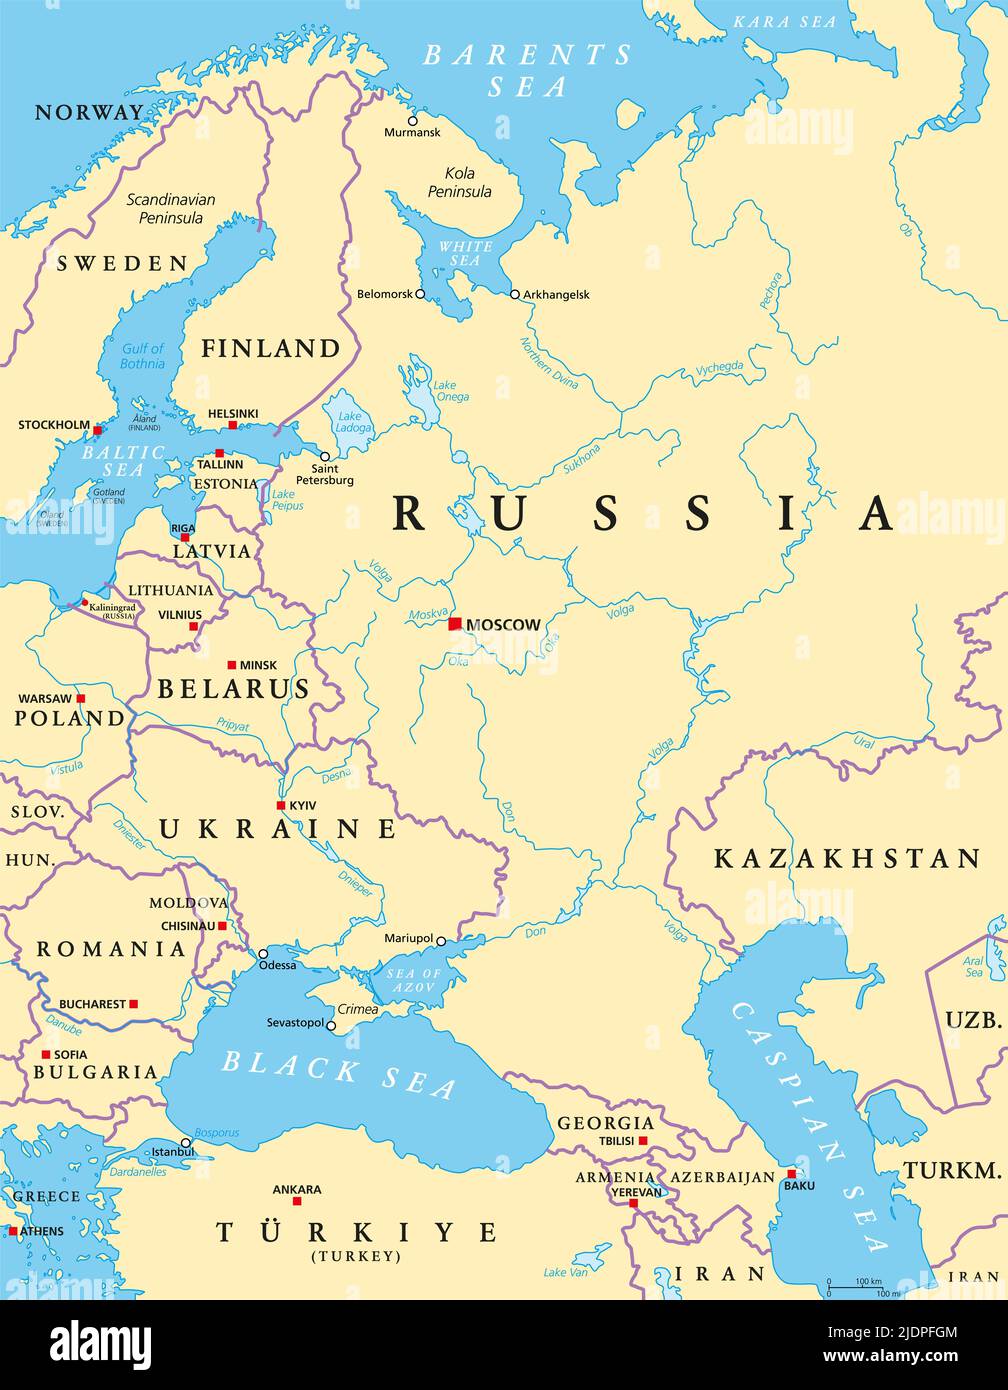 Europa orientale e Asia occidentale, mappa politica, con capitali e confini. Con il Mar Nero, il Mar Caspio, la Russia europea e parte dell'Asia centrale. Foto Stock